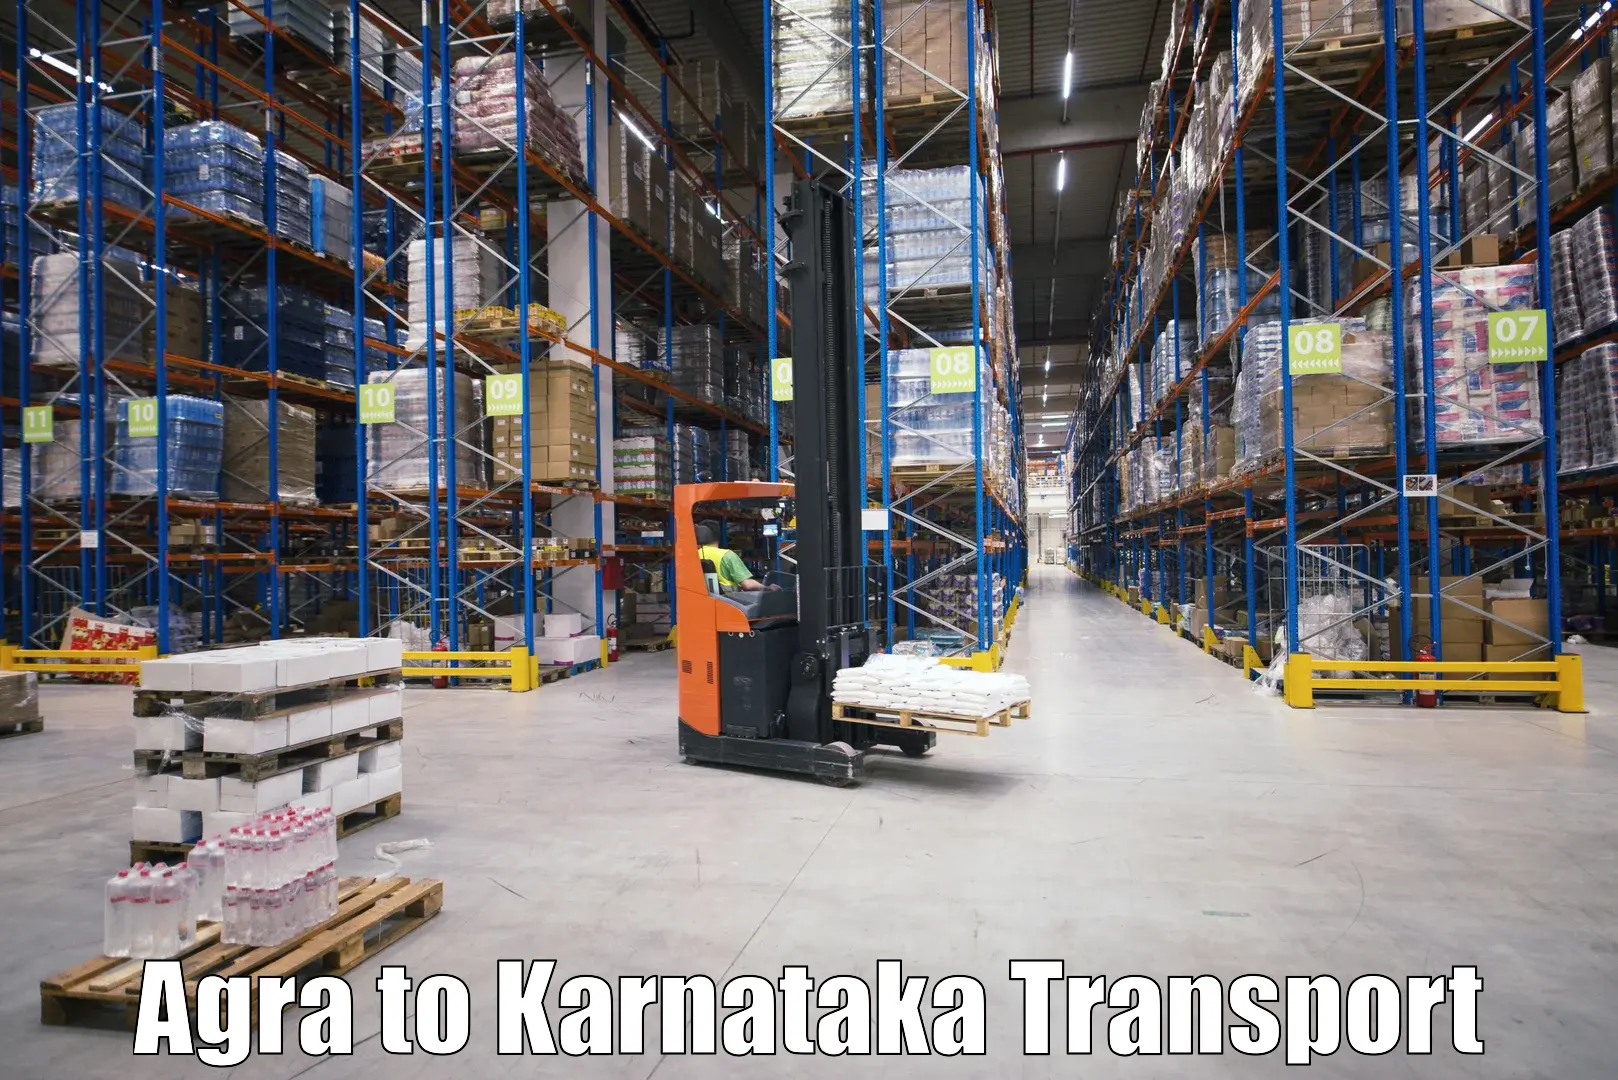 Delivery service Agra to Tikota